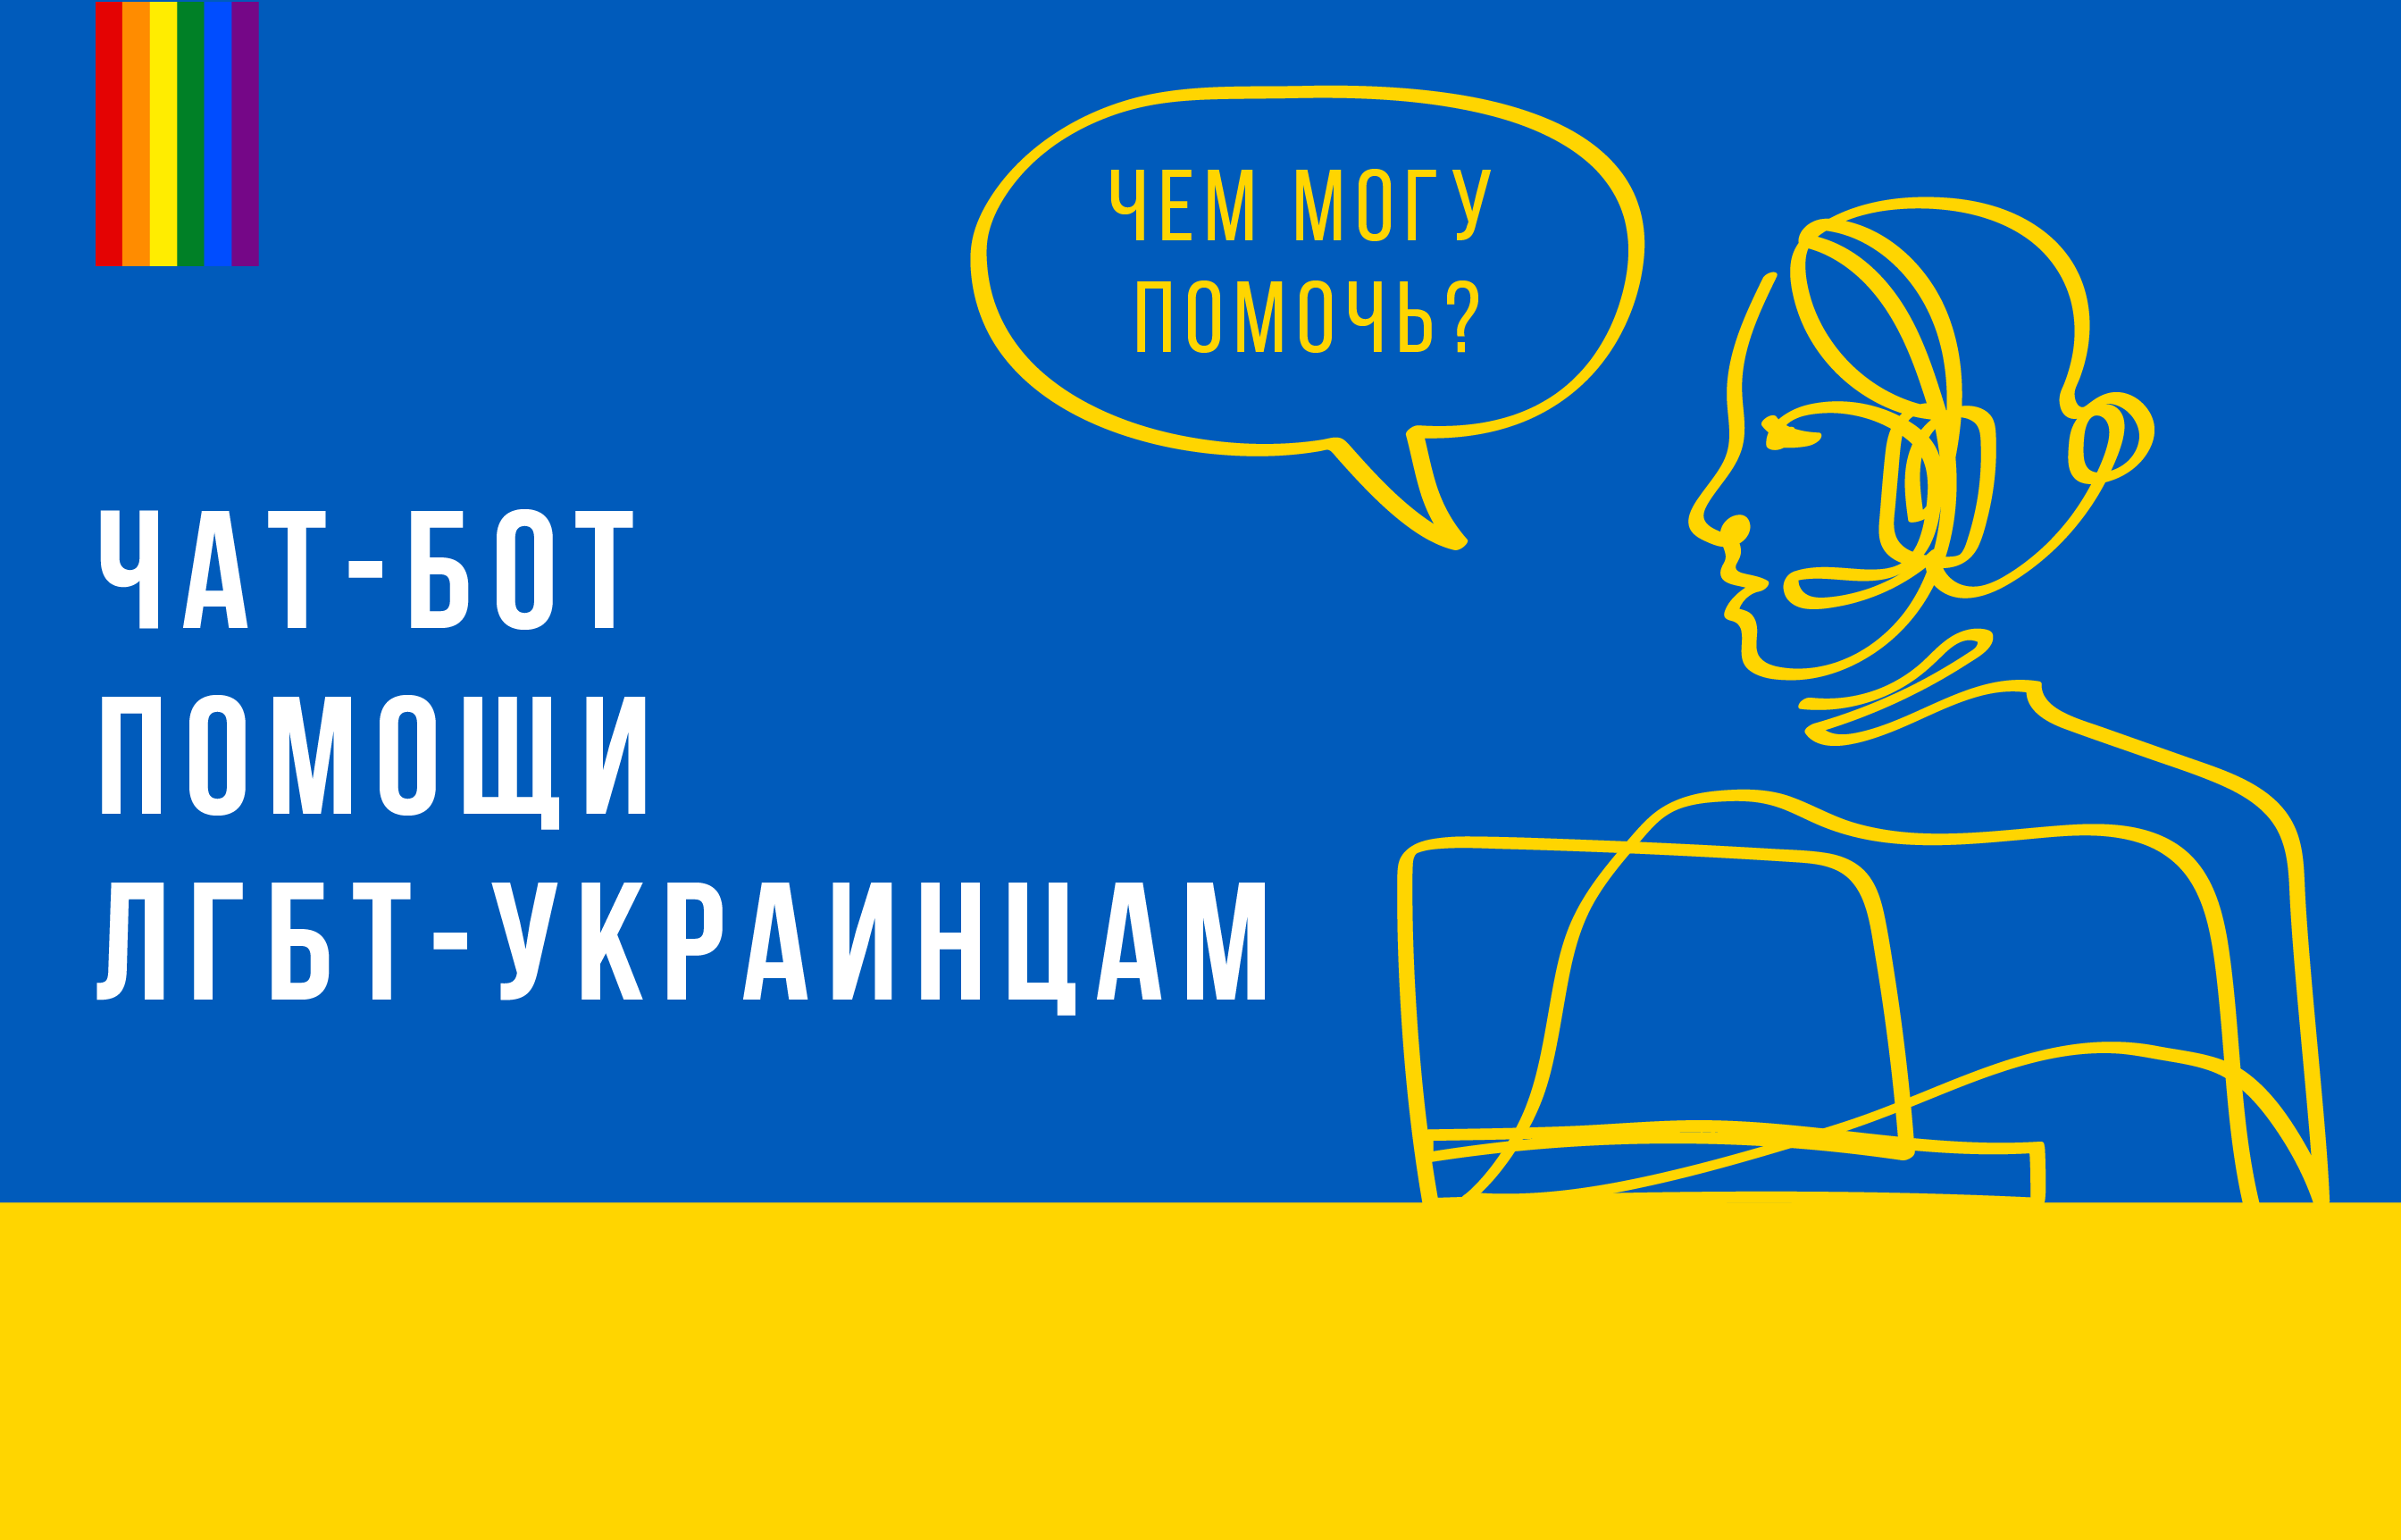 ЕКОМ запустила чат-бот для помощи ЛГБТ-украинцам